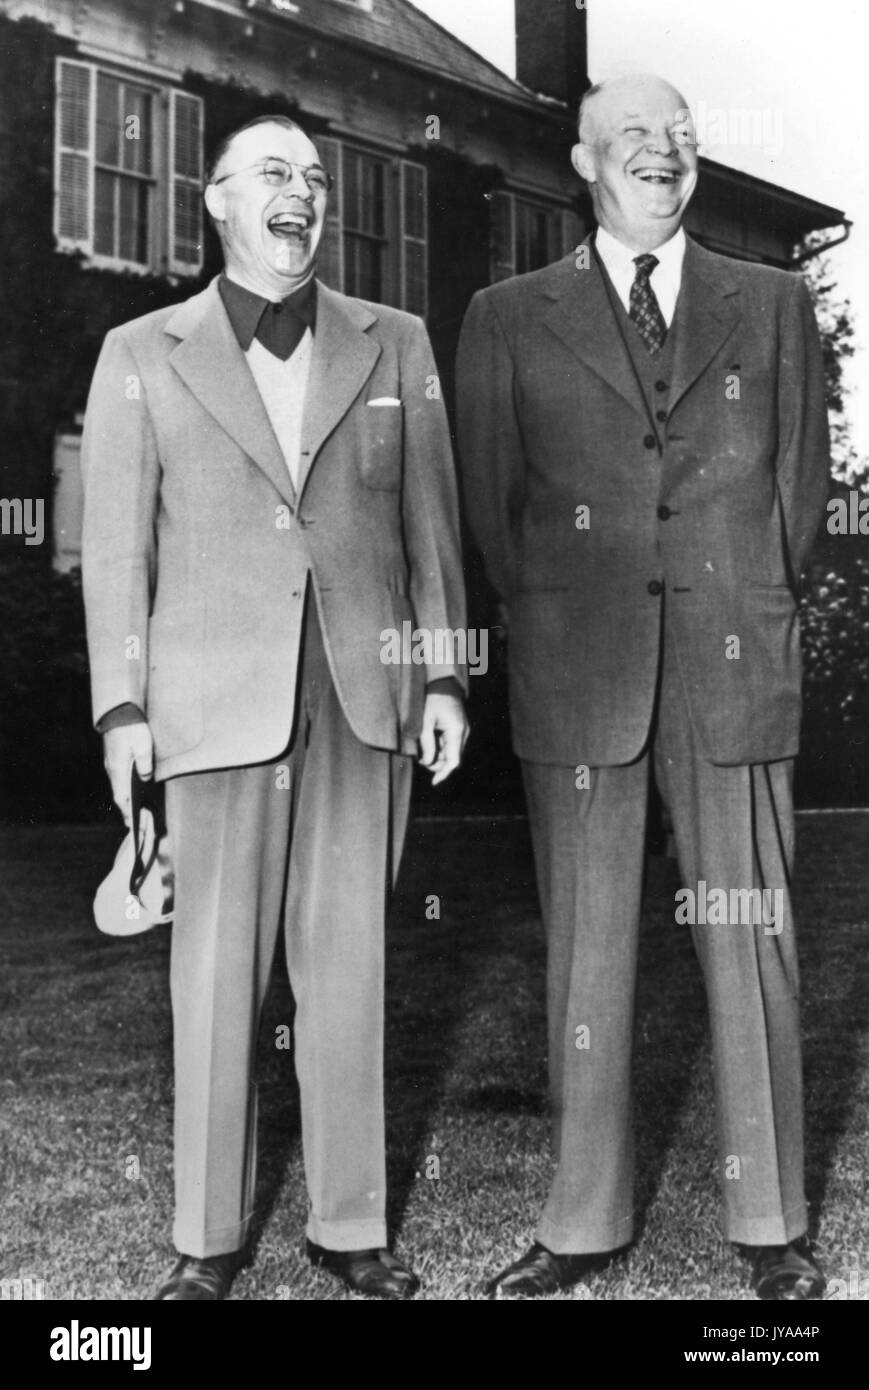 Milton stover eisenhower (sinistra), presidente della Johns Hopkins University, in piedi e ridere con suo fratello dwight d eisenhower (a destra), il presidente degli Stati Uniti, 1965. Foto Stock